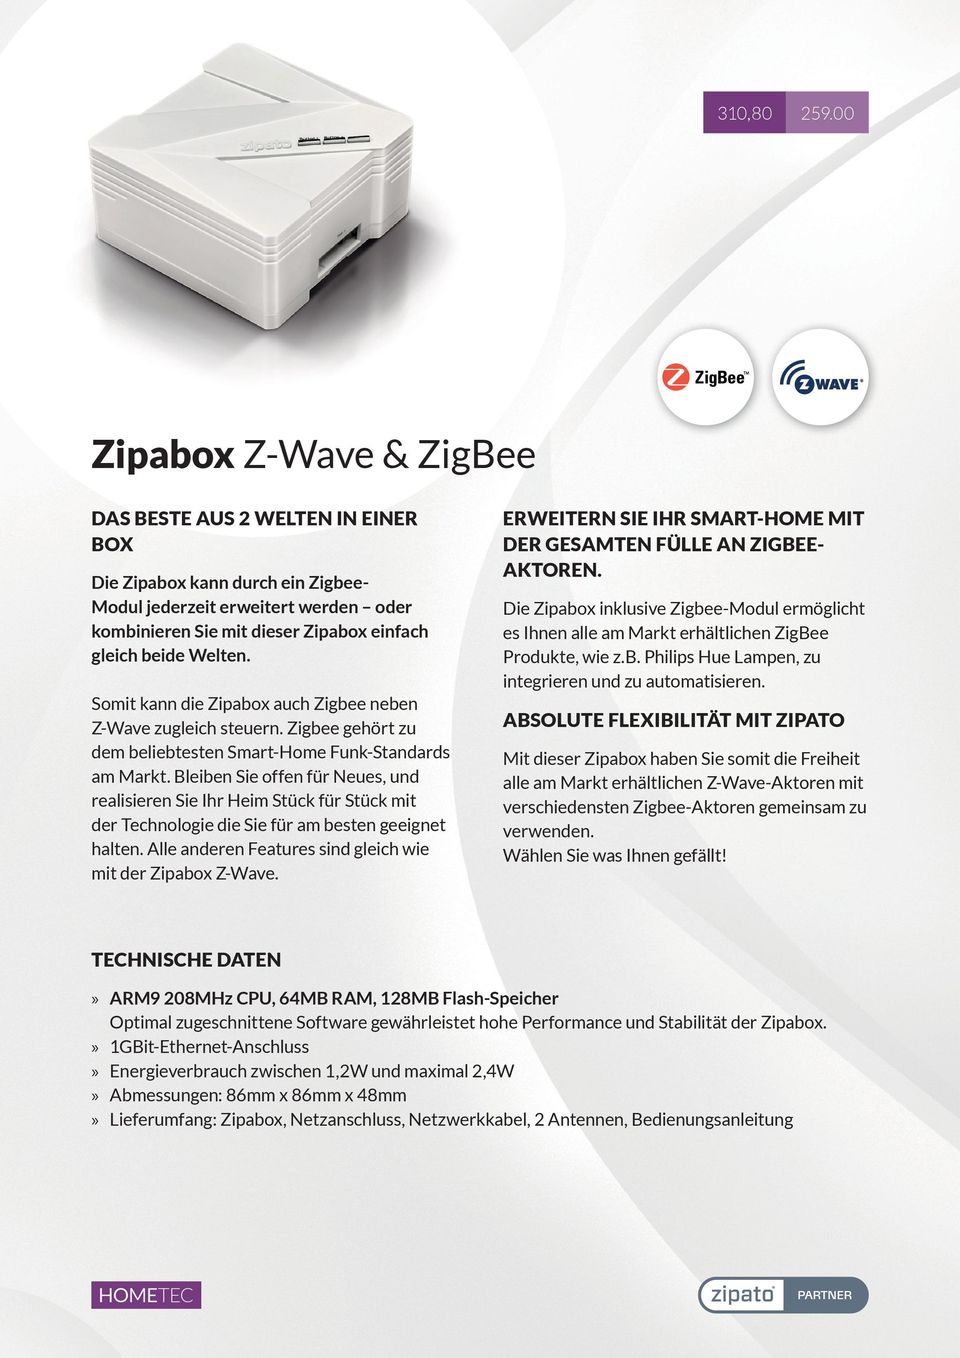 Somit kann die Zipabox auch Zigbee neben Z-Wave zugleich steuern. Zigbee gehört zu dem beliebtesten Smart-Home Funk-Standards am Markt.